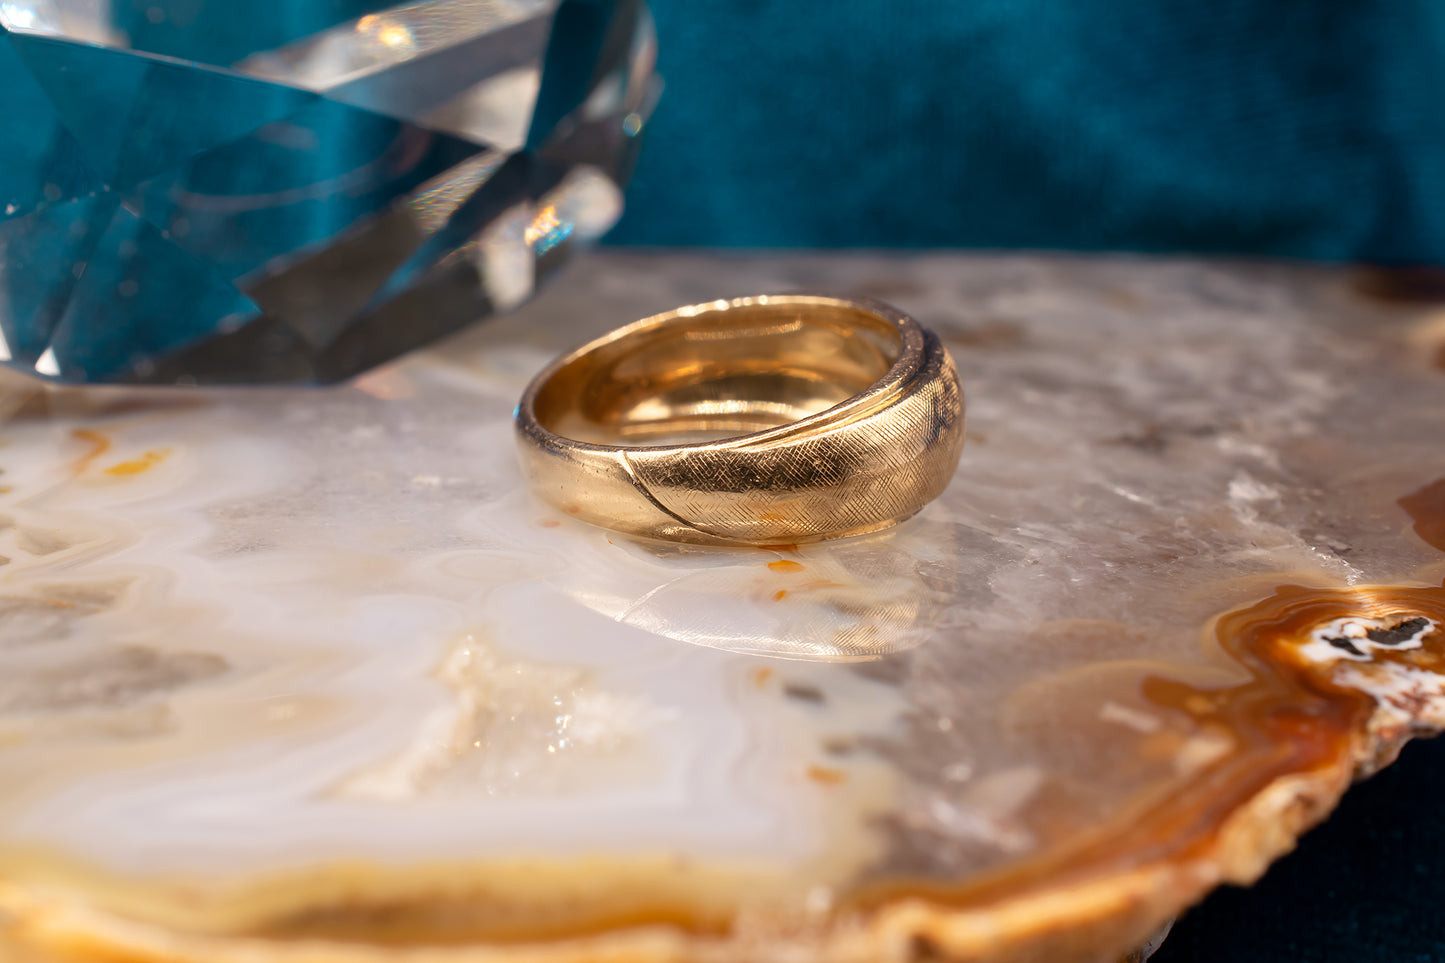 Vintage Unisex 14k Yellow Gold Florentine Finish Beveled Edge Diamond Ring Size 6 1/4